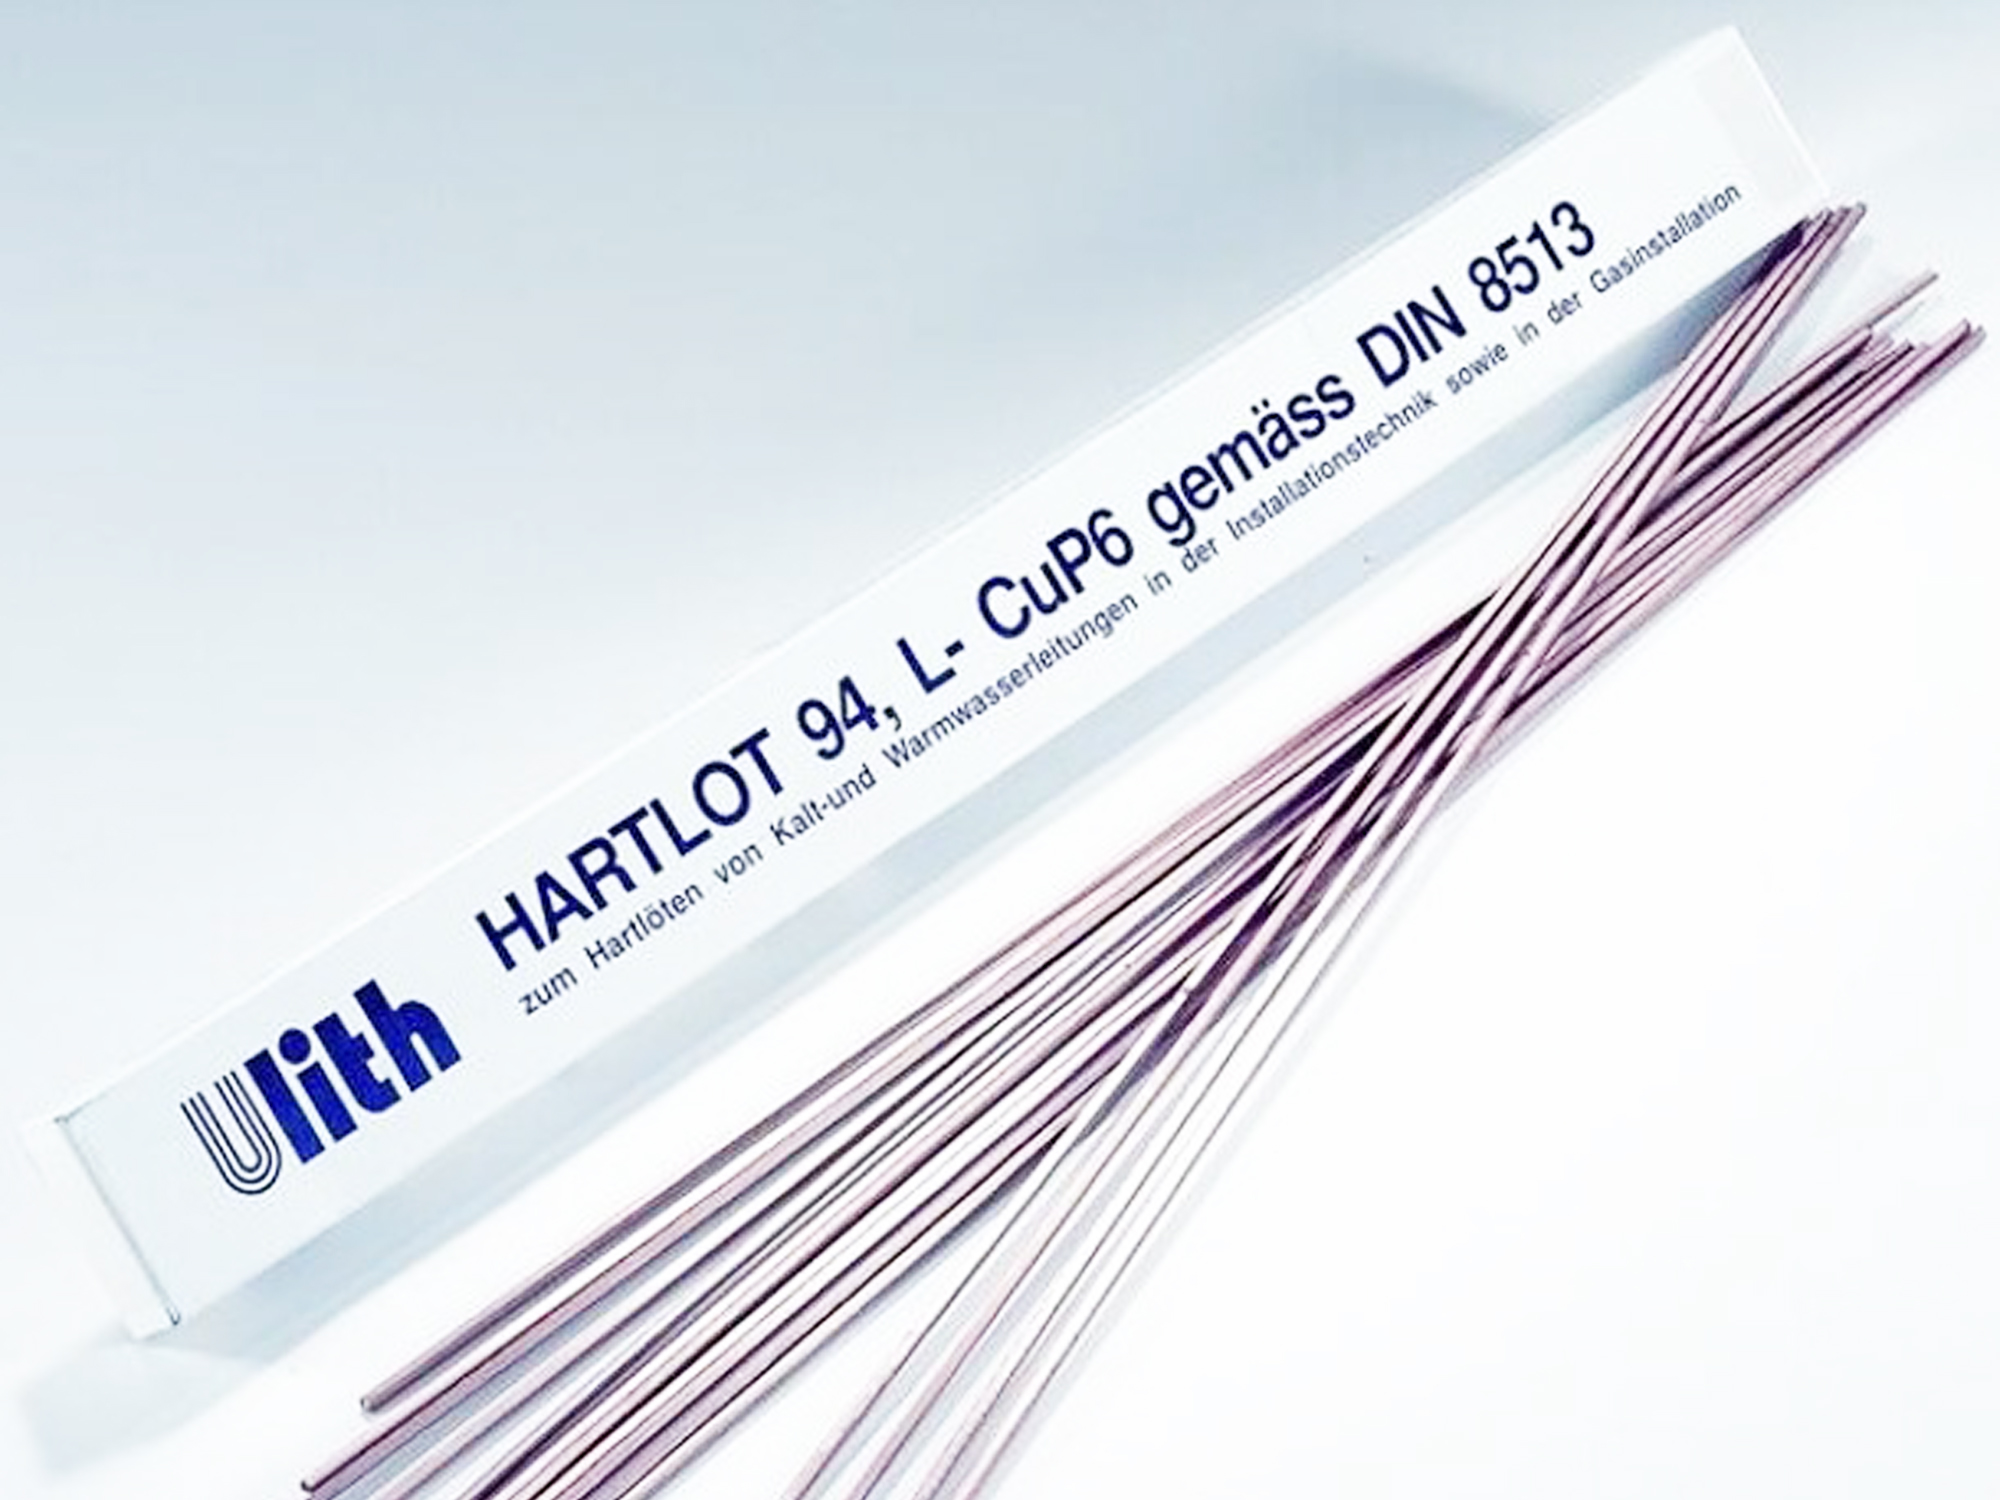 Paket Hartlot L-CuP6 2mm DIN EN 1044 1kg